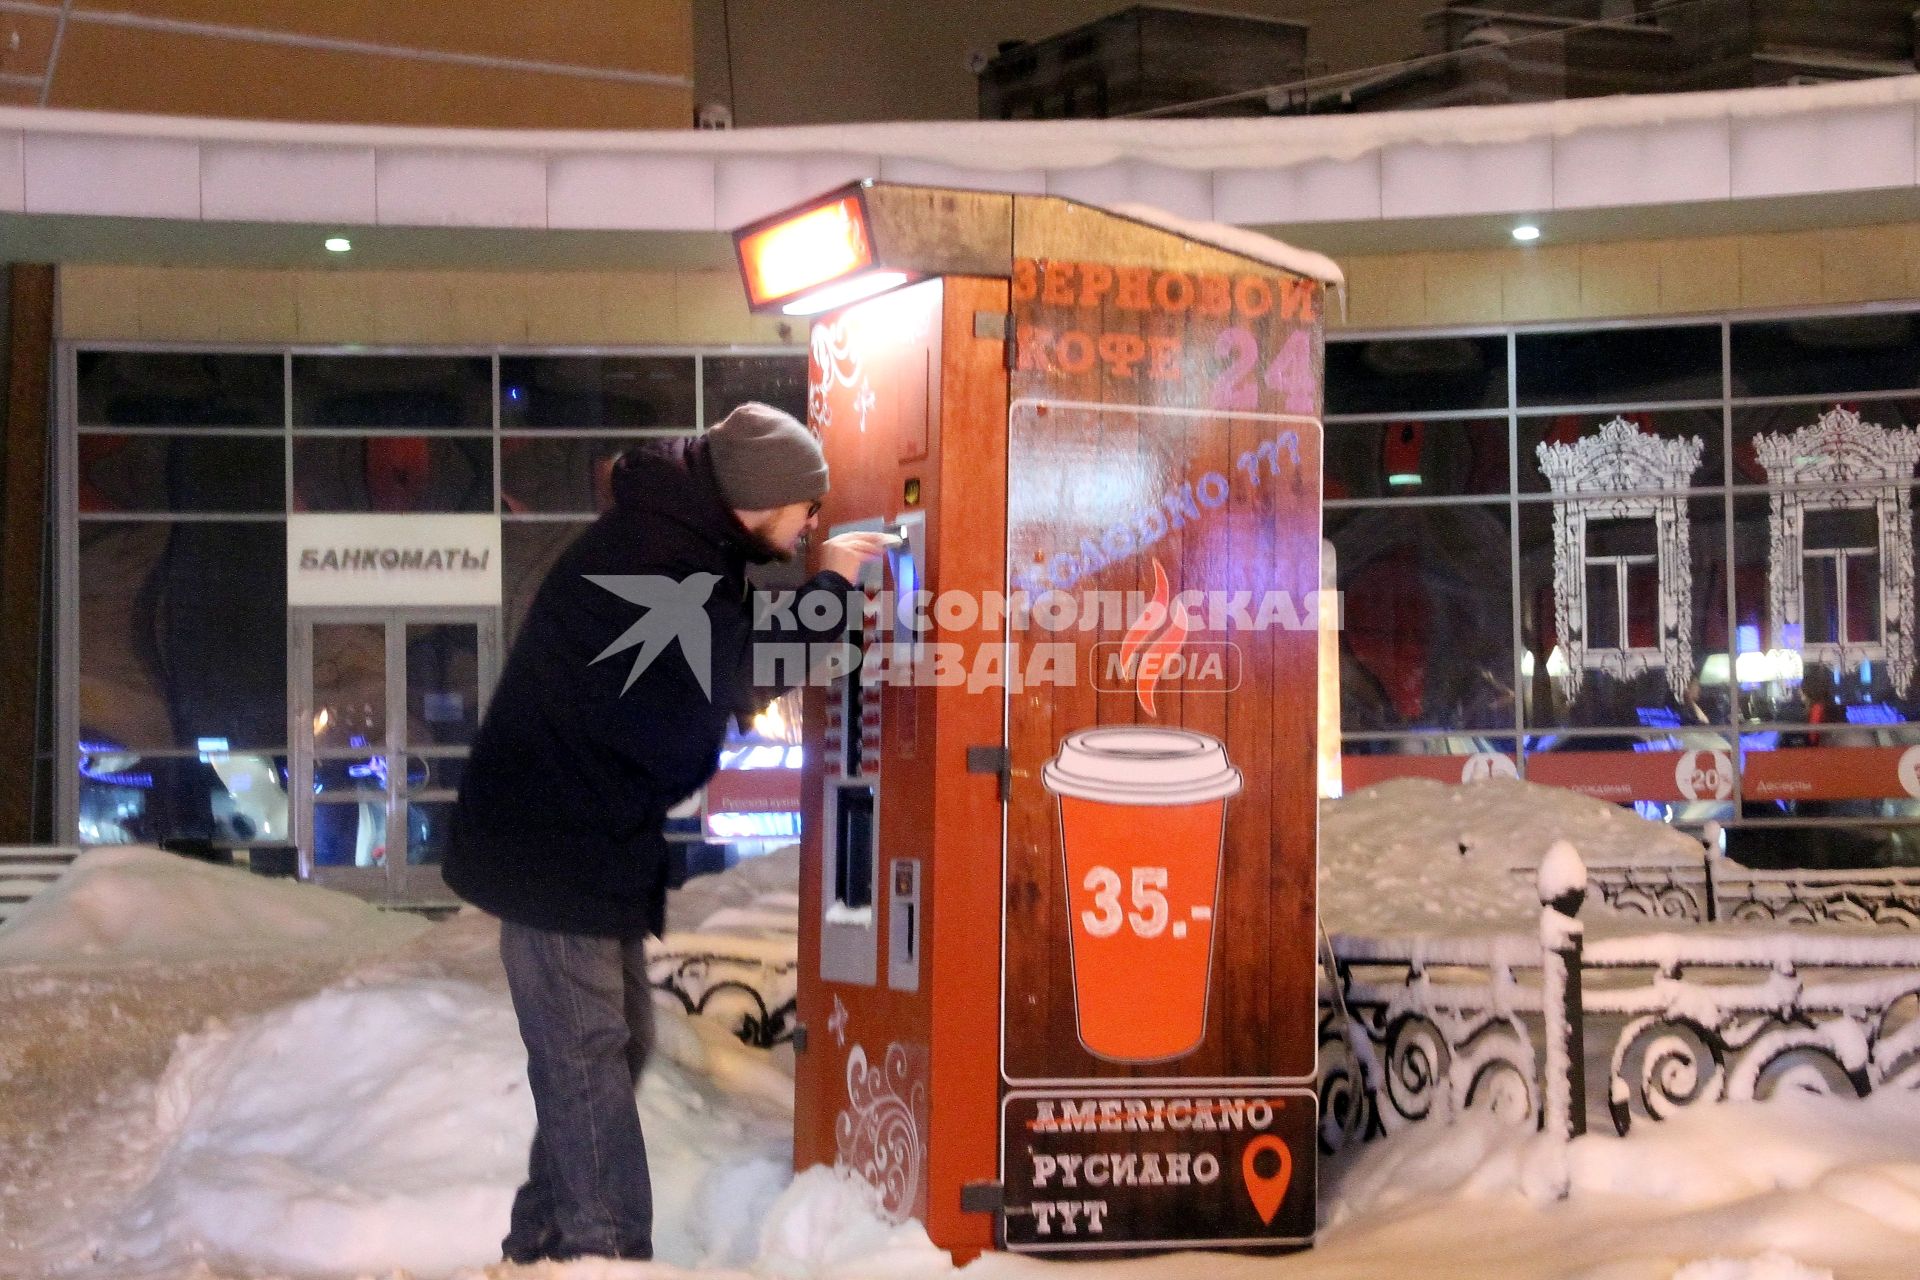 Нижний Новгород. Мужчина покупает кофе `руссиано` в торговом автомате на одной из улиц города.